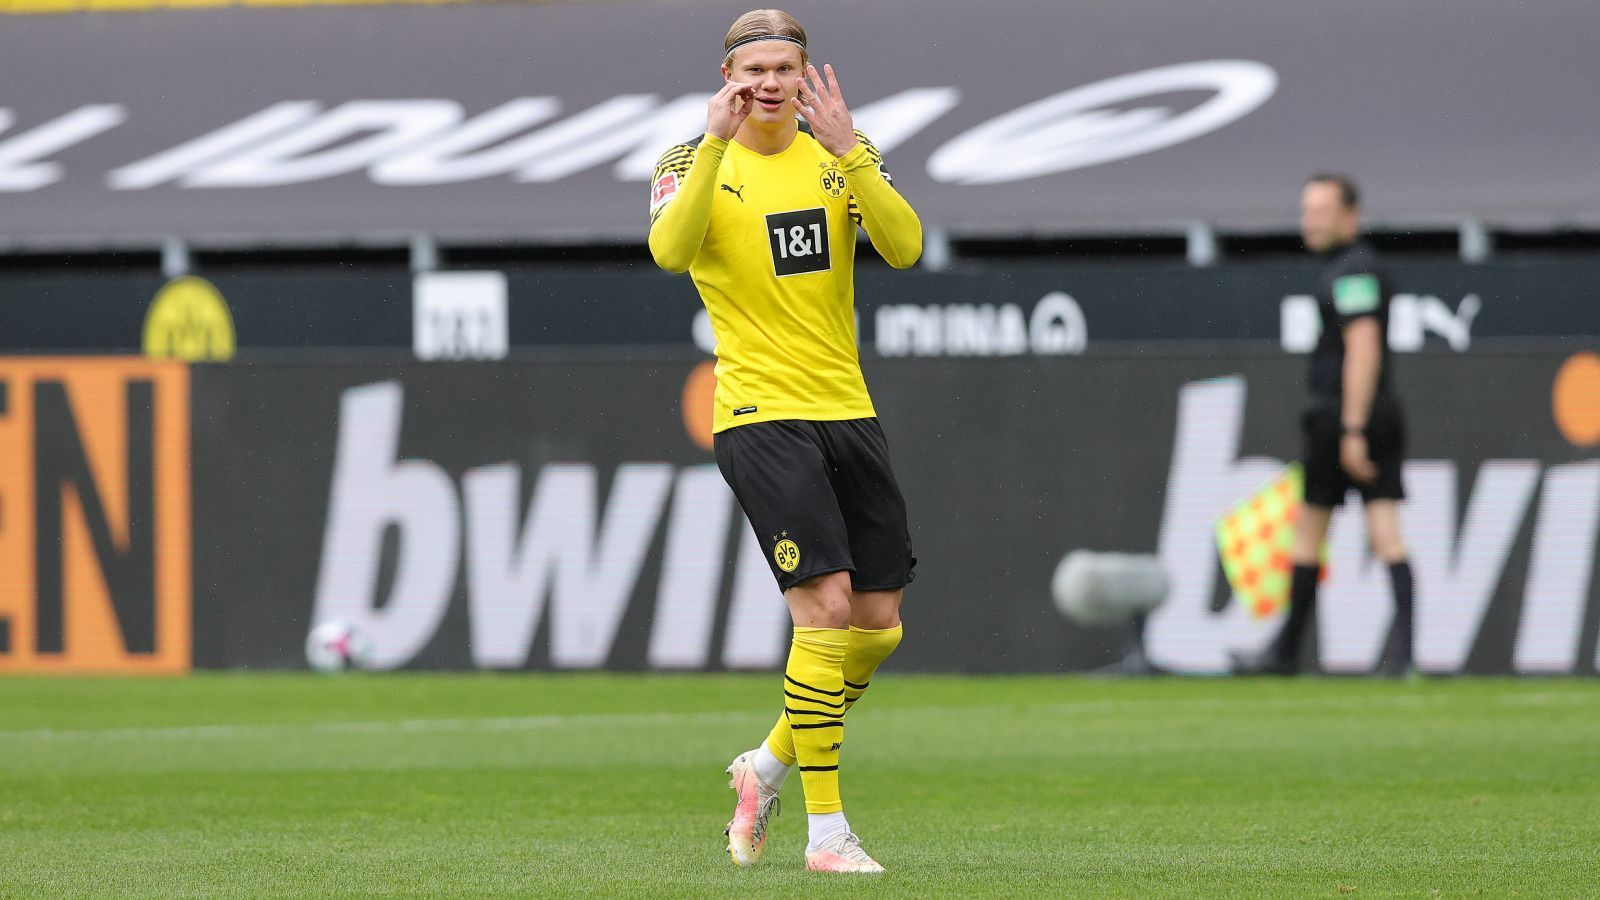 
                <strong>Platz 1 (geteilt): Erling Haaland (Borussia Dortmund)</strong><br>
                Der andere Dortmunder an der Spitze ist, na klar, Erling Haaland. Der Norweger, der mit seiner Nation übrigens die Europameisterschaft verpasste, lässt die Zahlen für sich sprechen. Insgesamt 41 Pflichtspieltore erzielte der 20-Jährige im Dress von Borussia Dortmund, für ihn gibt es vom Portal "transfermarkt.de" sogar einen neuen Rekordwert: Haaland ist nun 130 Millionen Euro wert, ein neuer Rekord für die Bundesliga. Er steigert sich, wie Bellingham, um 20 Millionen.
              